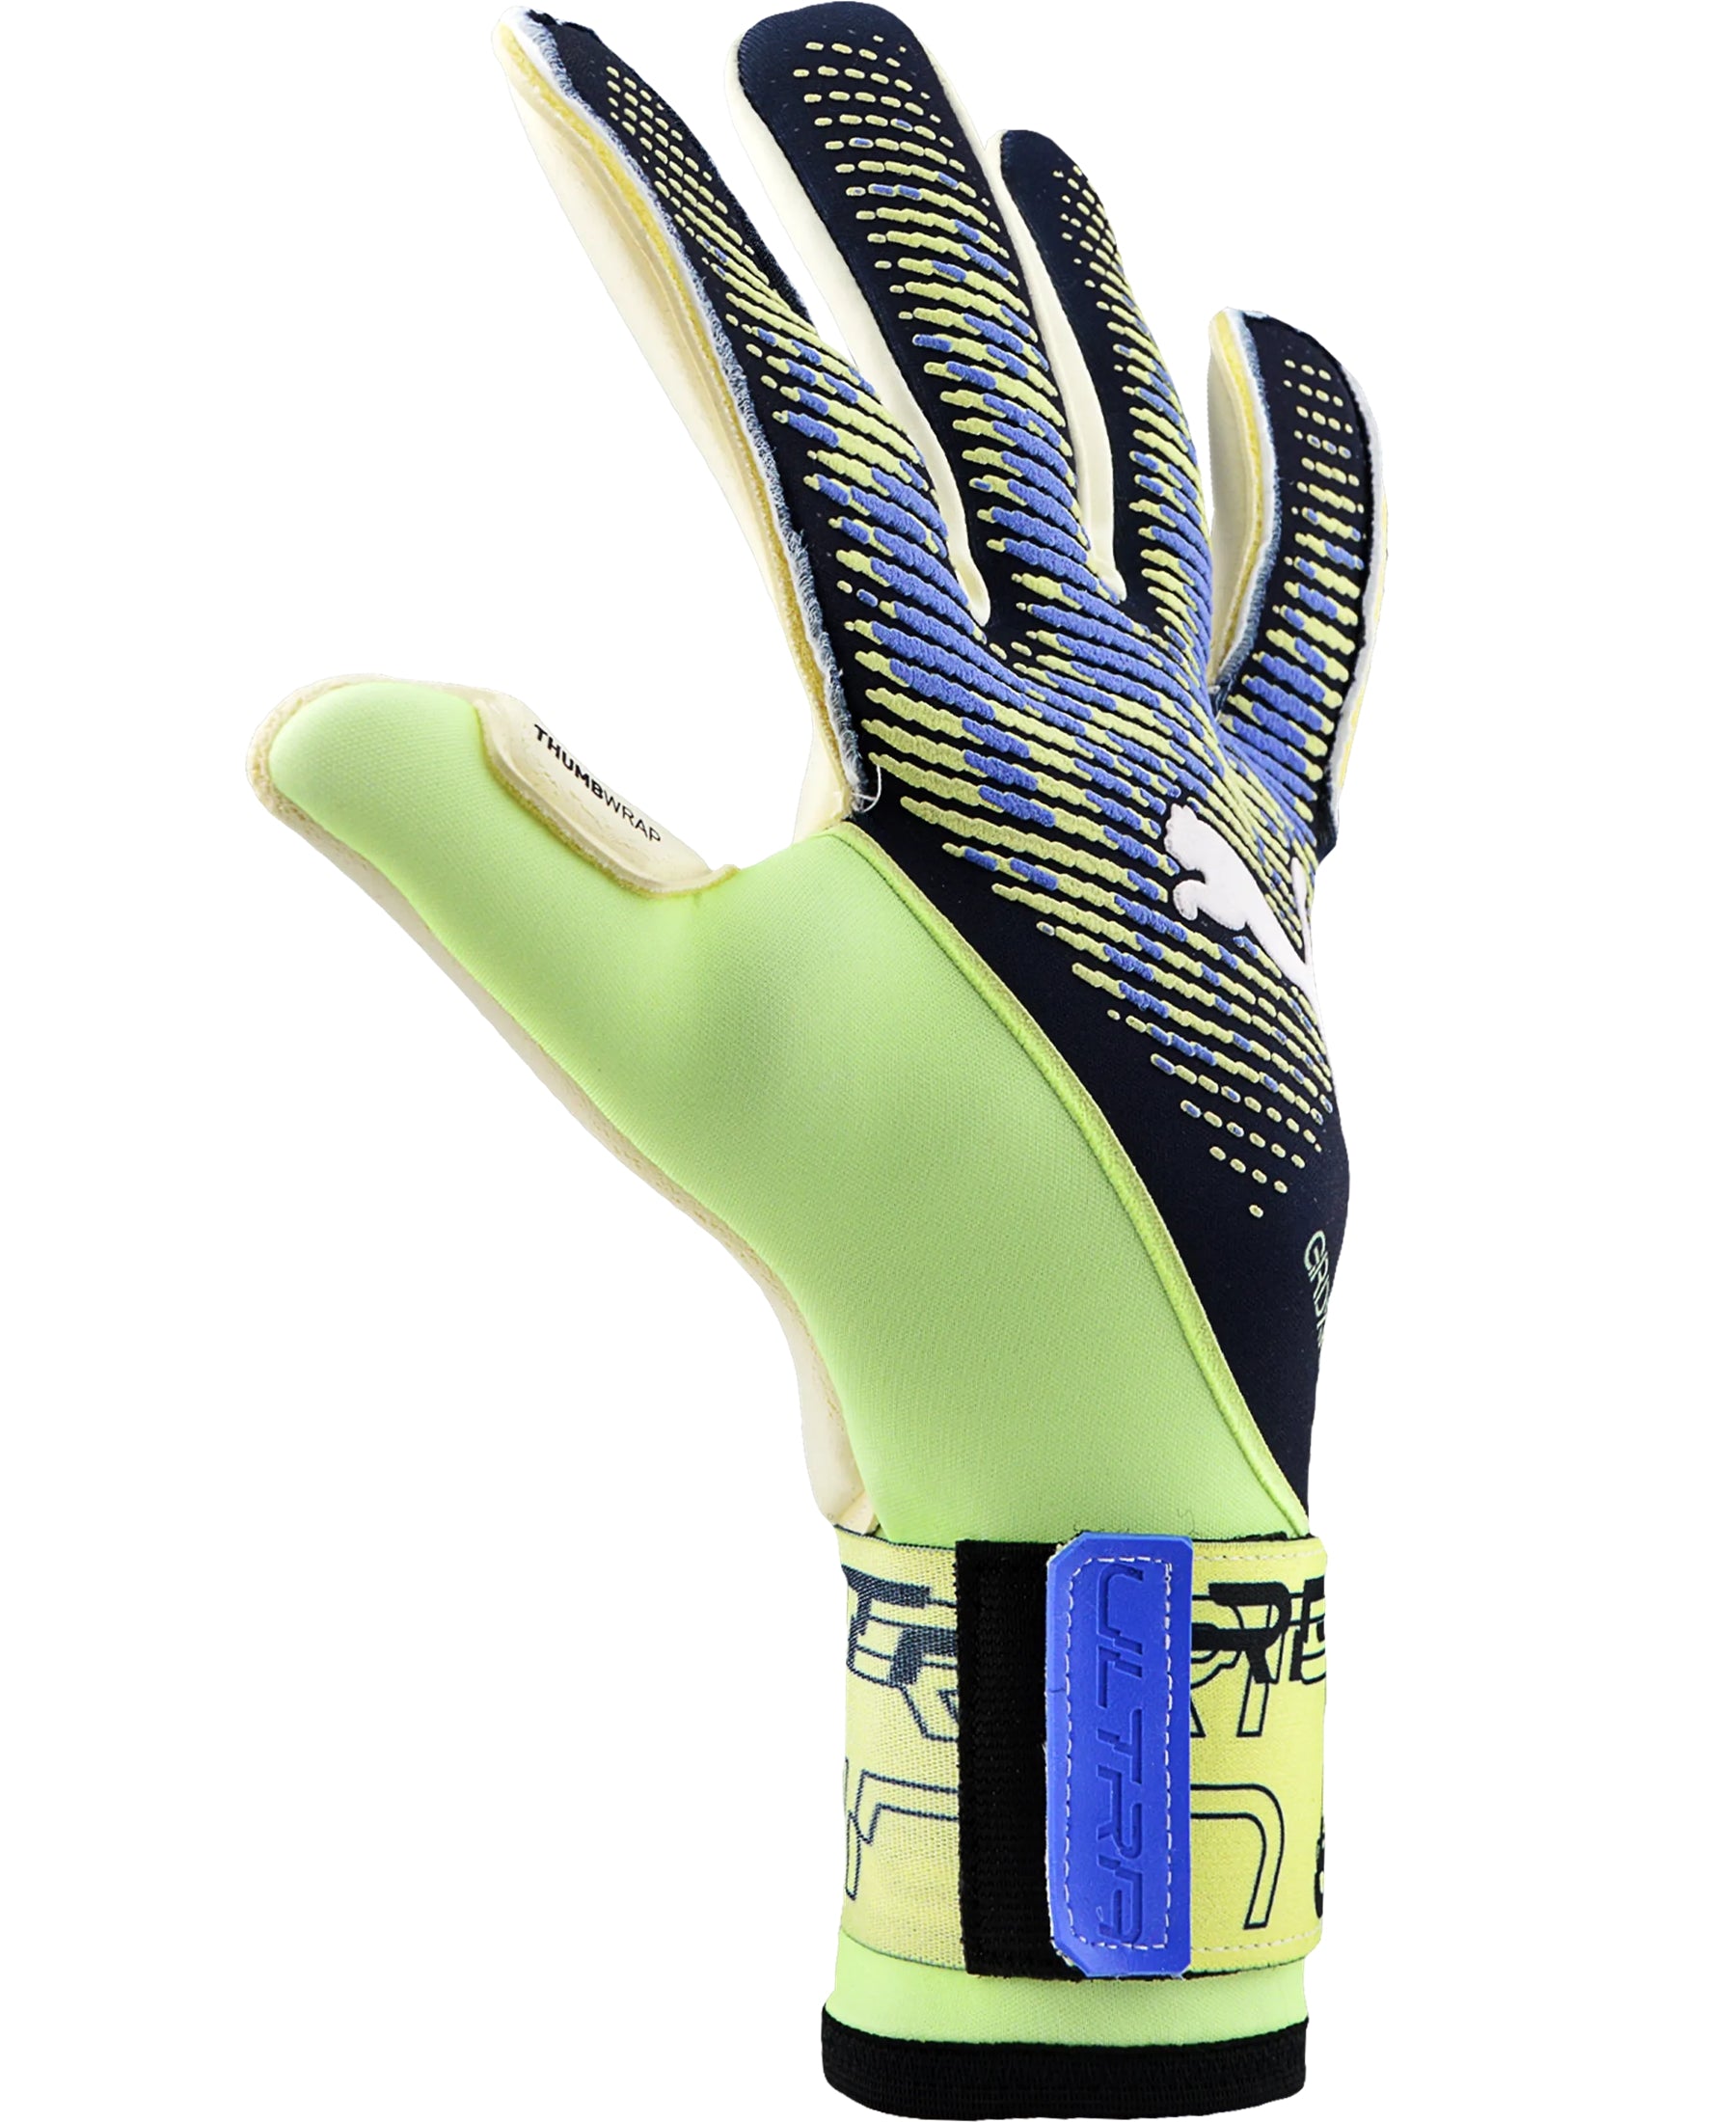 Entdecken Sie die Puma Ultra Grip 1 Hybrid Torwarthandschuhe (041827-01) – ein Must-have für ambitionierte Torhüter. Diese Handschuhe, erhältlich bei SHOP4TEAMSPORT, bieten erstklassige Performance und Zuverlässigkeit. Die innovative Hybrid-Technologie kombiniert Latex und Netzmaterial, um einen unschlagbaren Grip und optimale Belüftung zu gewährleisten. Mit ihrem ergonomischen Design passen sie sich perfekt an Ihre Hände an und bieten maximalen Schutz.